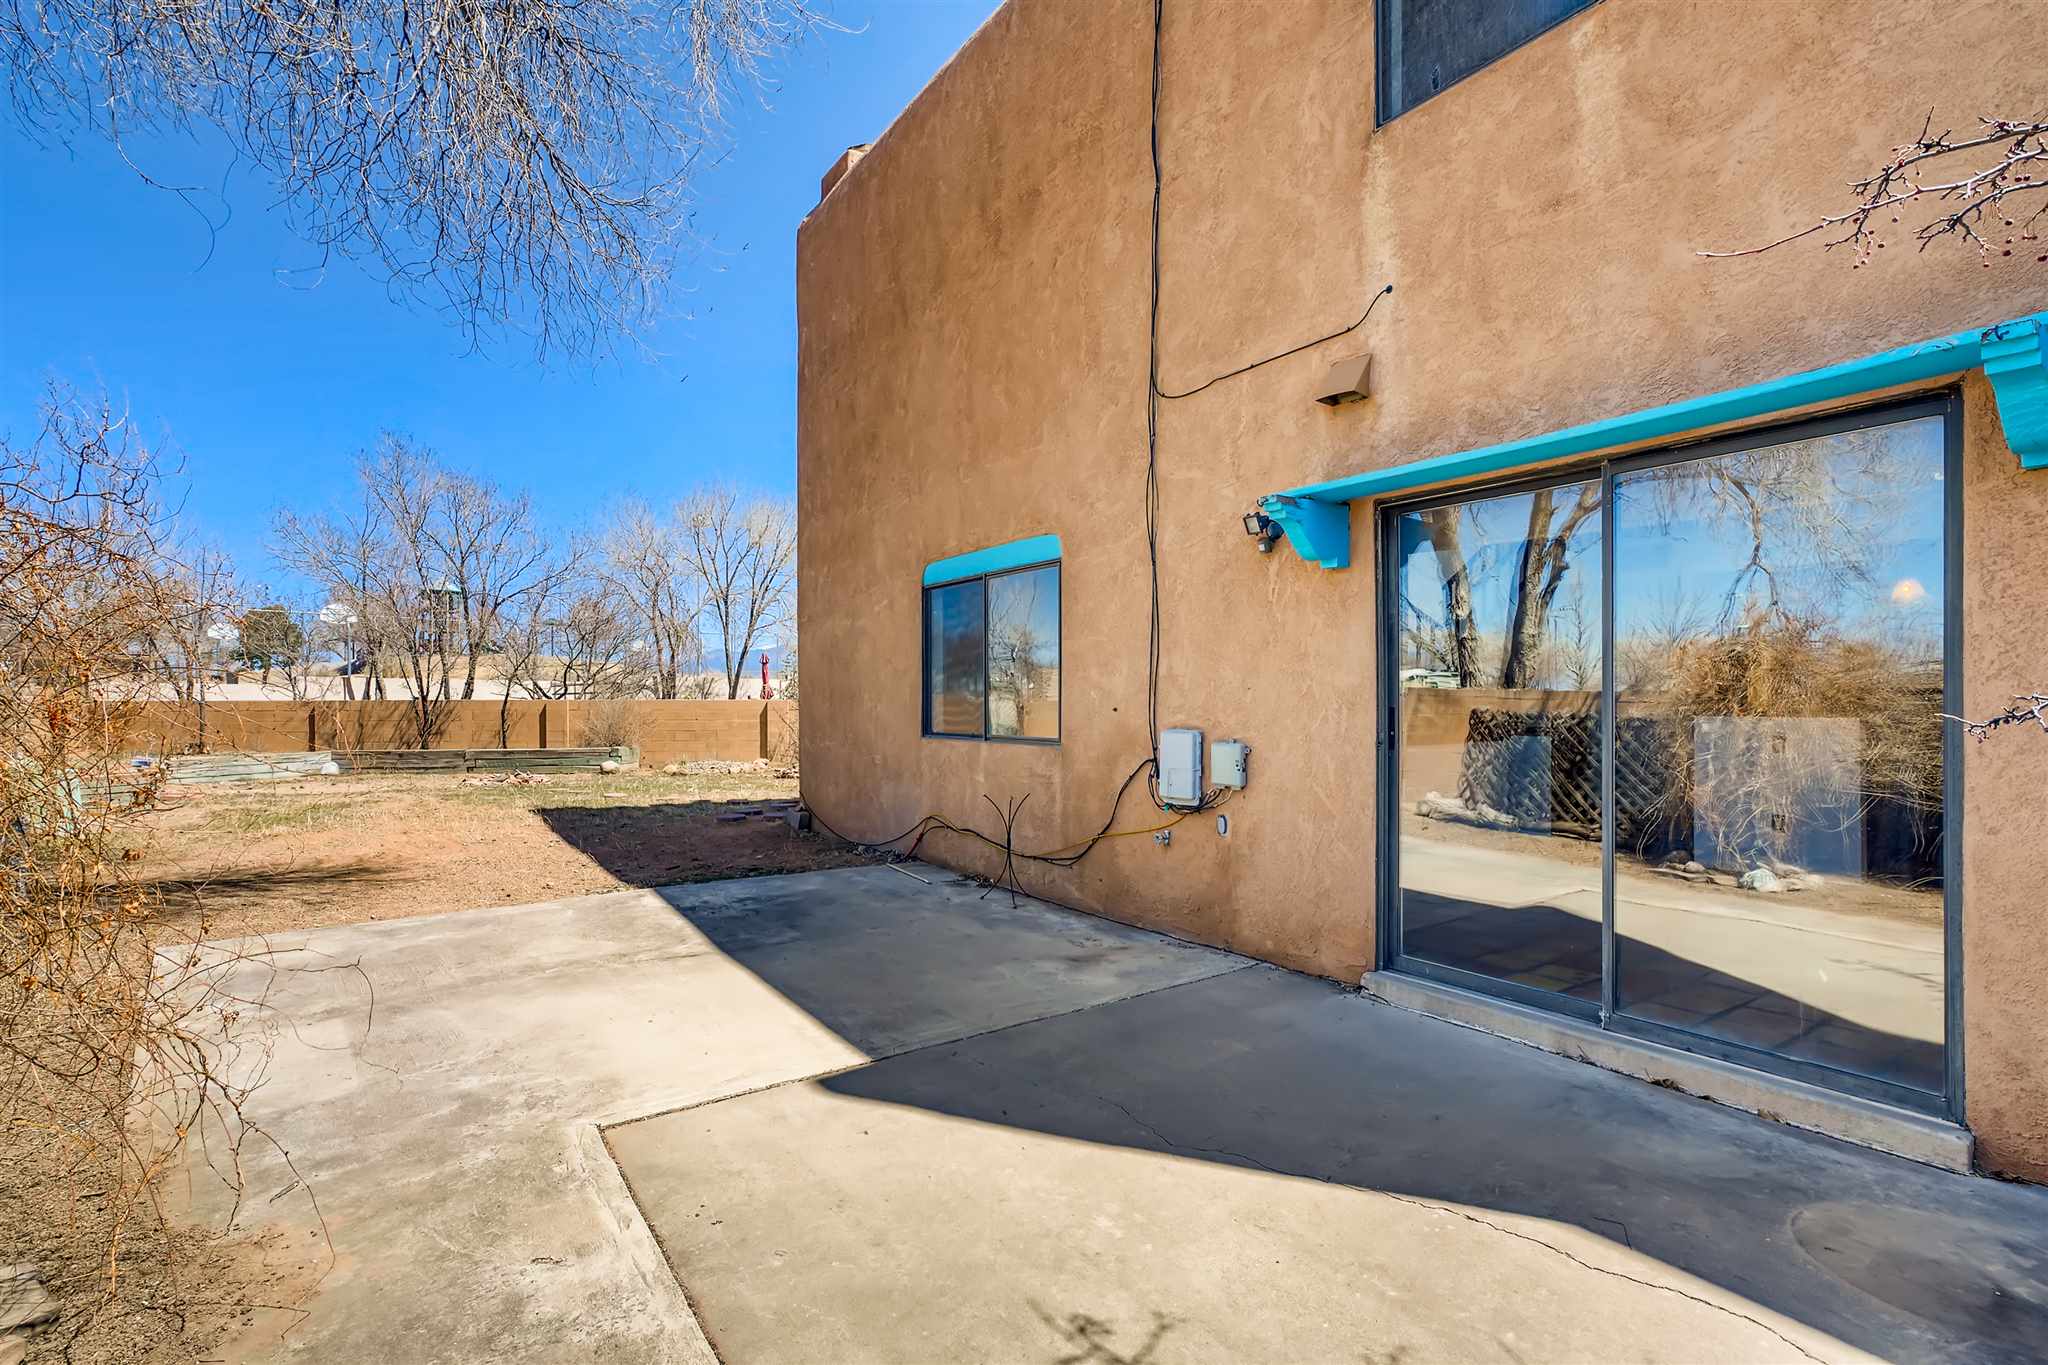 2408 San Patricio, Santa Fe, New Mexico 87505, 3 Bedrooms Bedrooms, ,2 BathroomsBathrooms,Residential,For Sale,2408 San Patricio,202101193